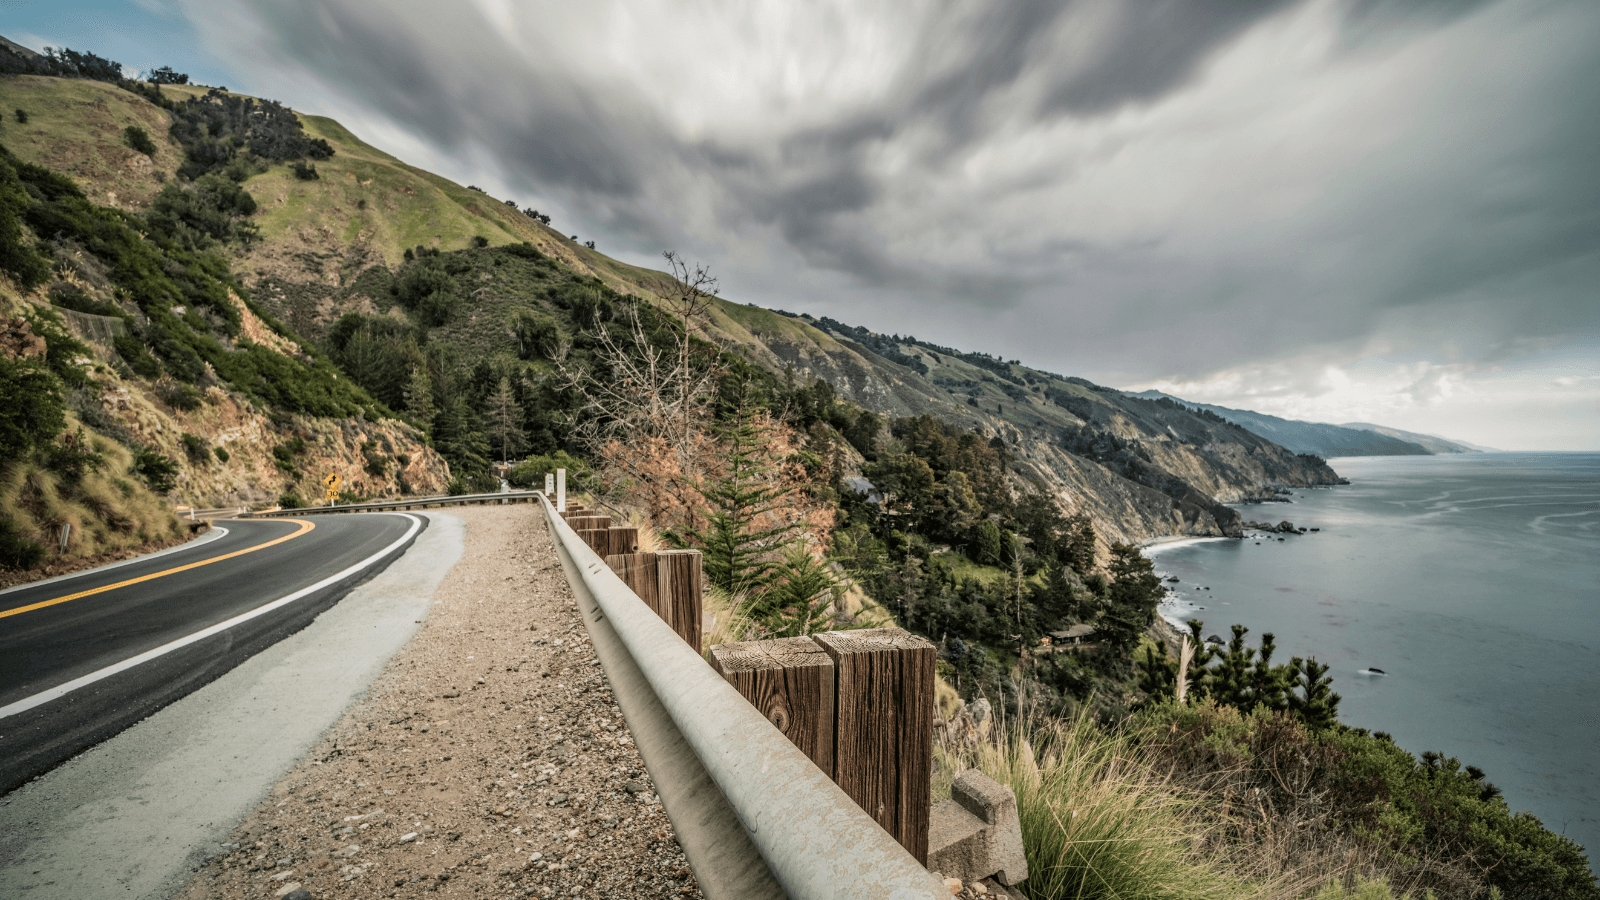 Road running along coastline